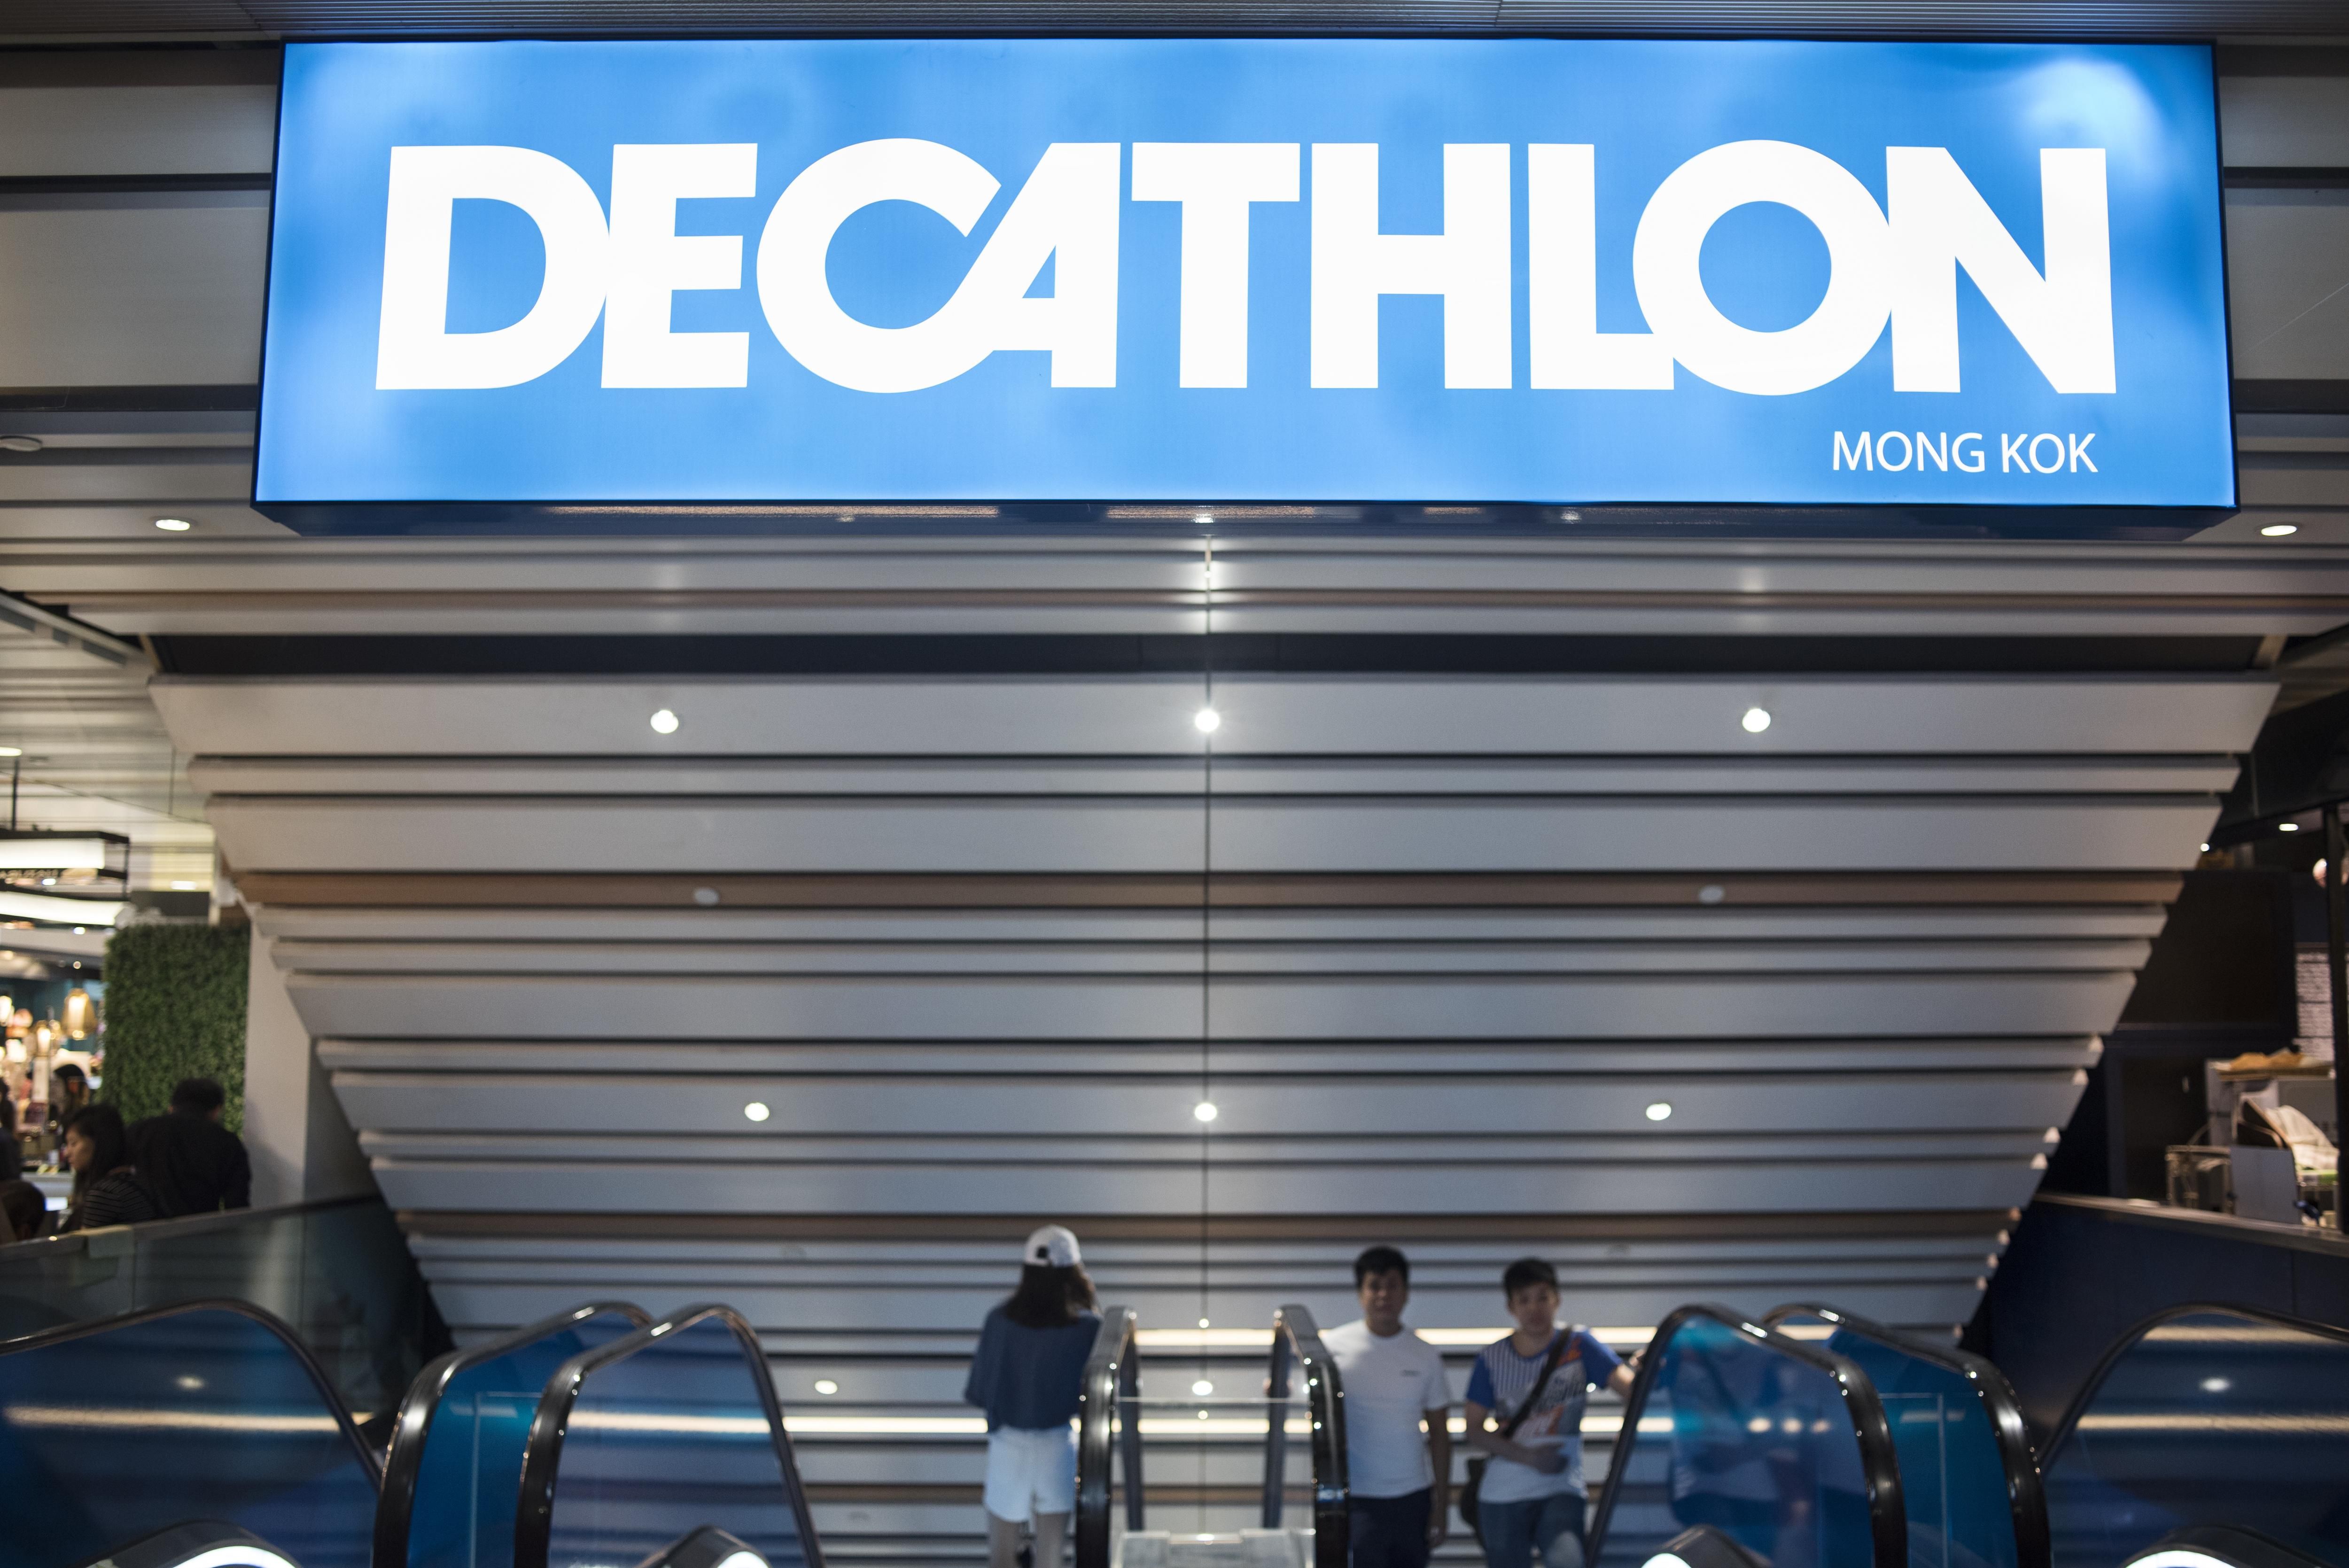 Decathlon в Киеве - где и когда будет открытие первого магазина в 2019 году